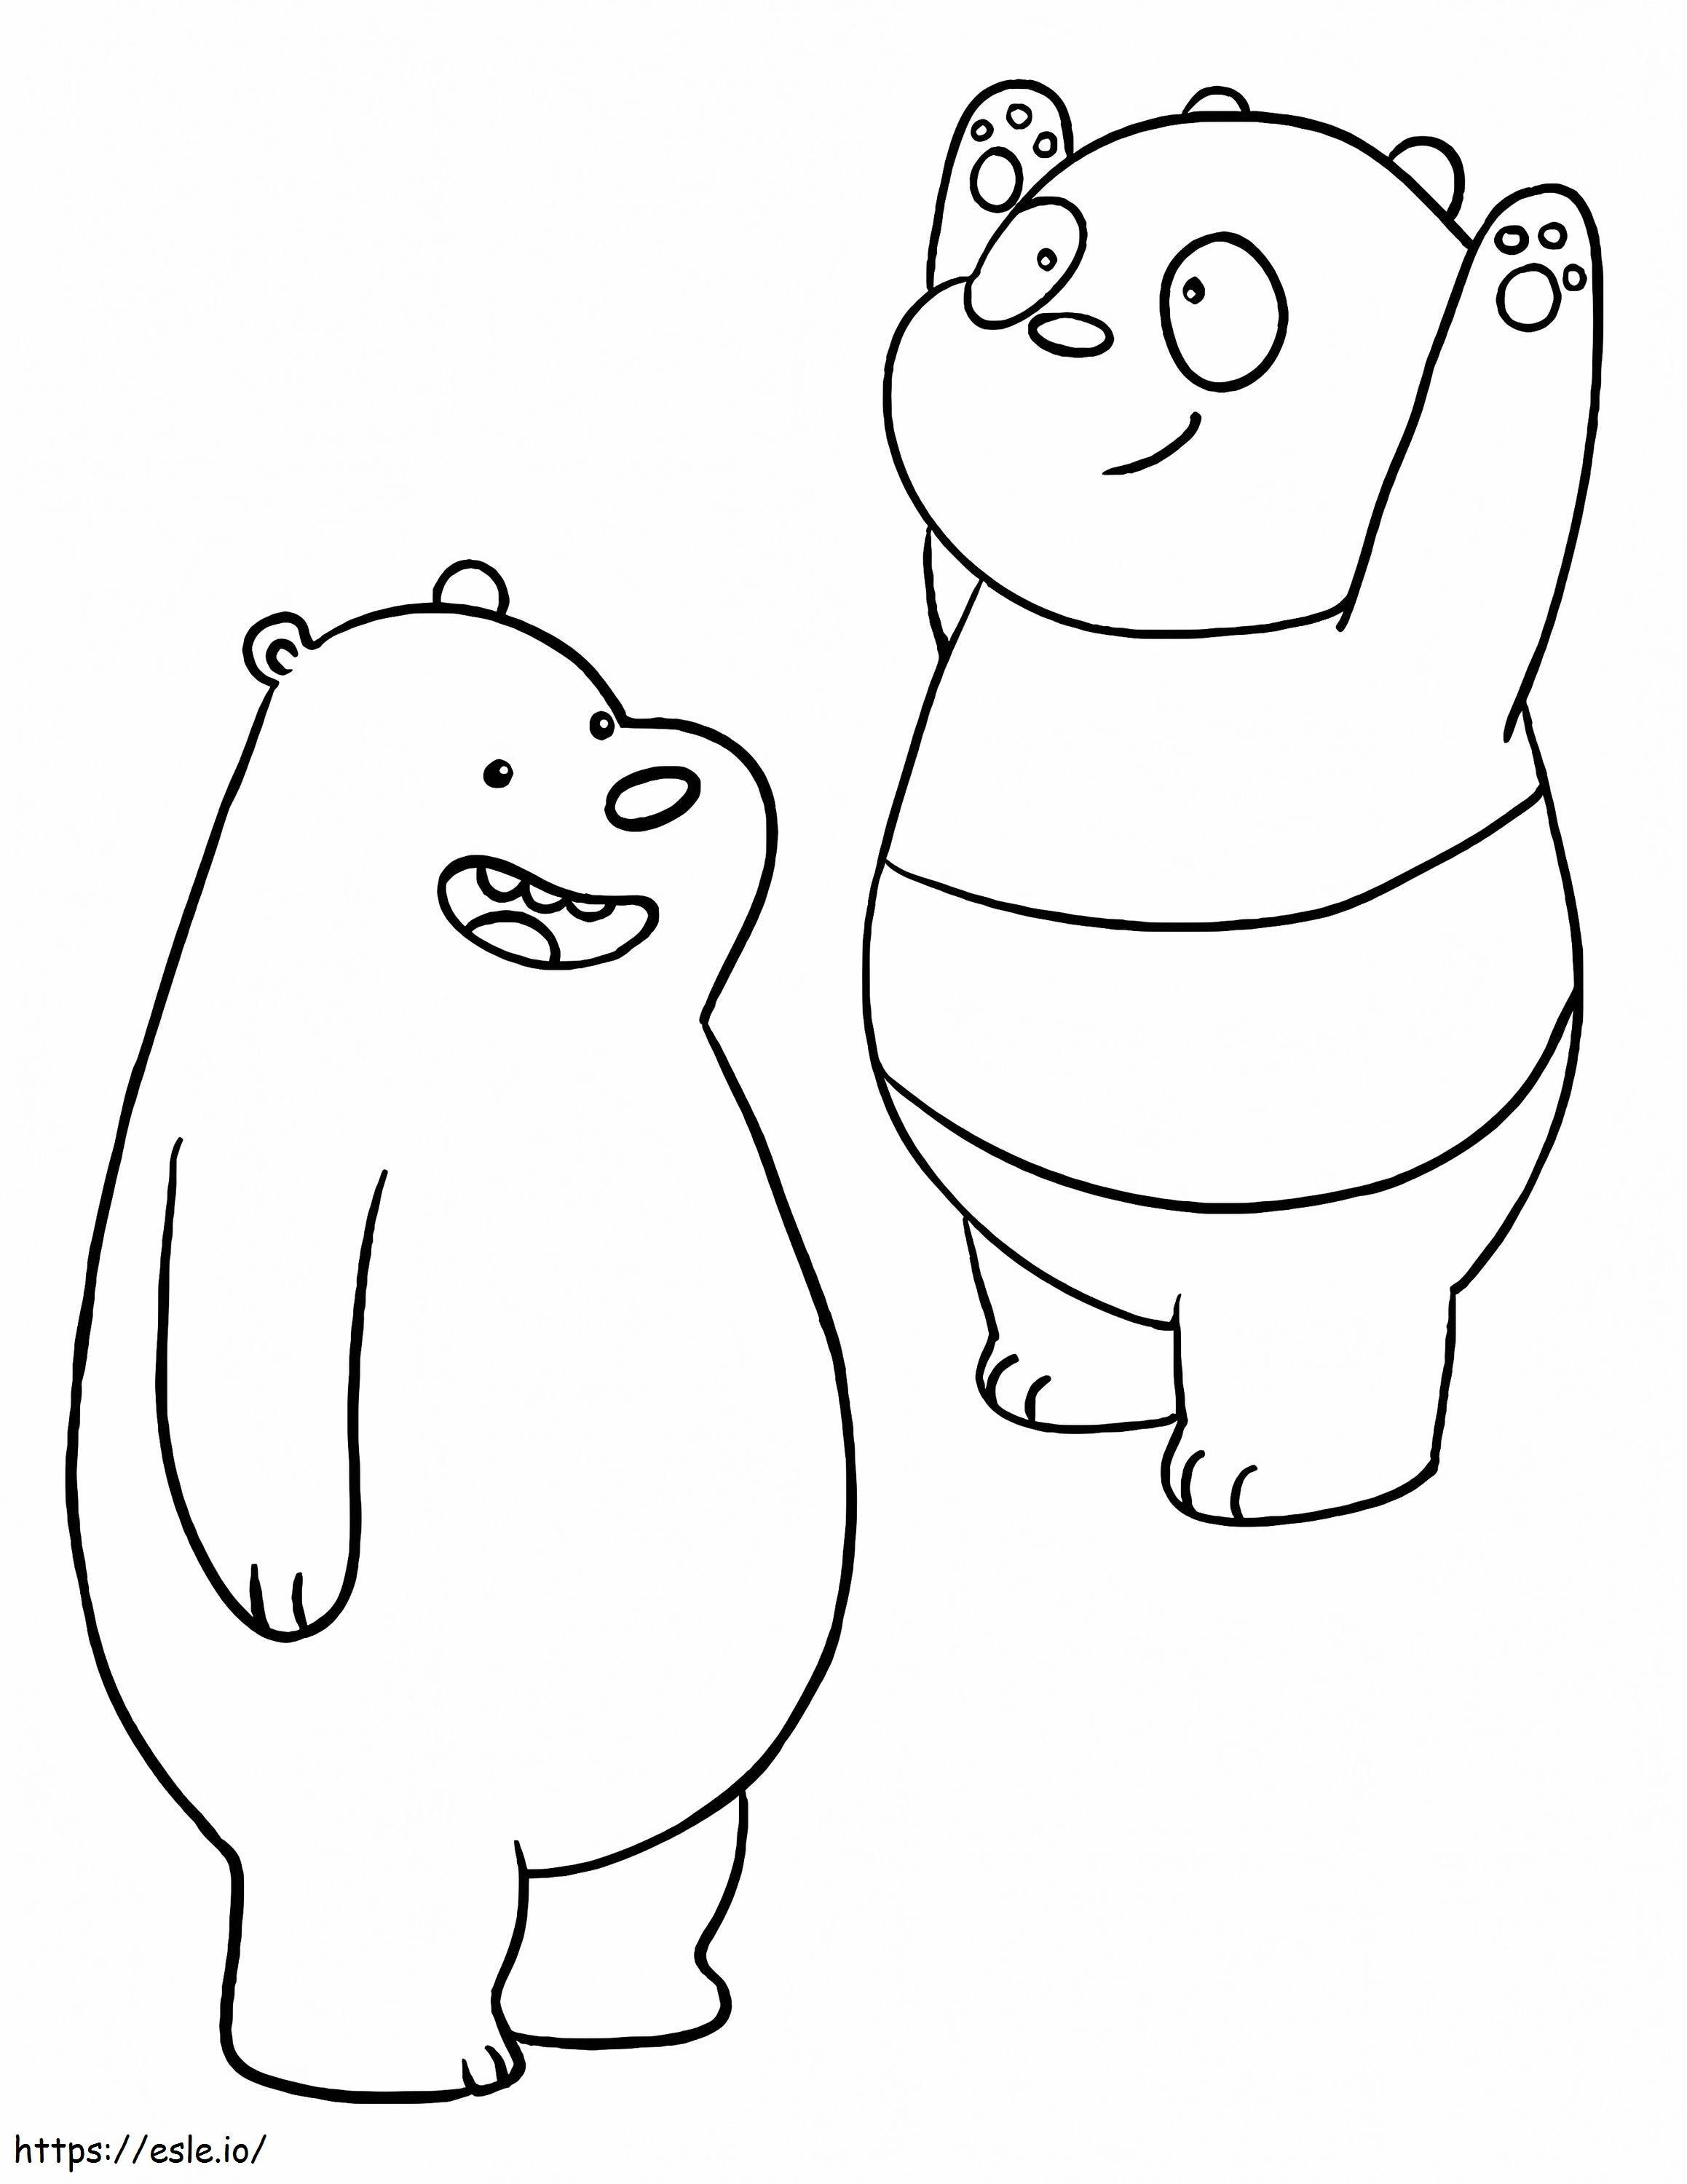 1560476156 Urso Pardo E Panda A4 para colorir